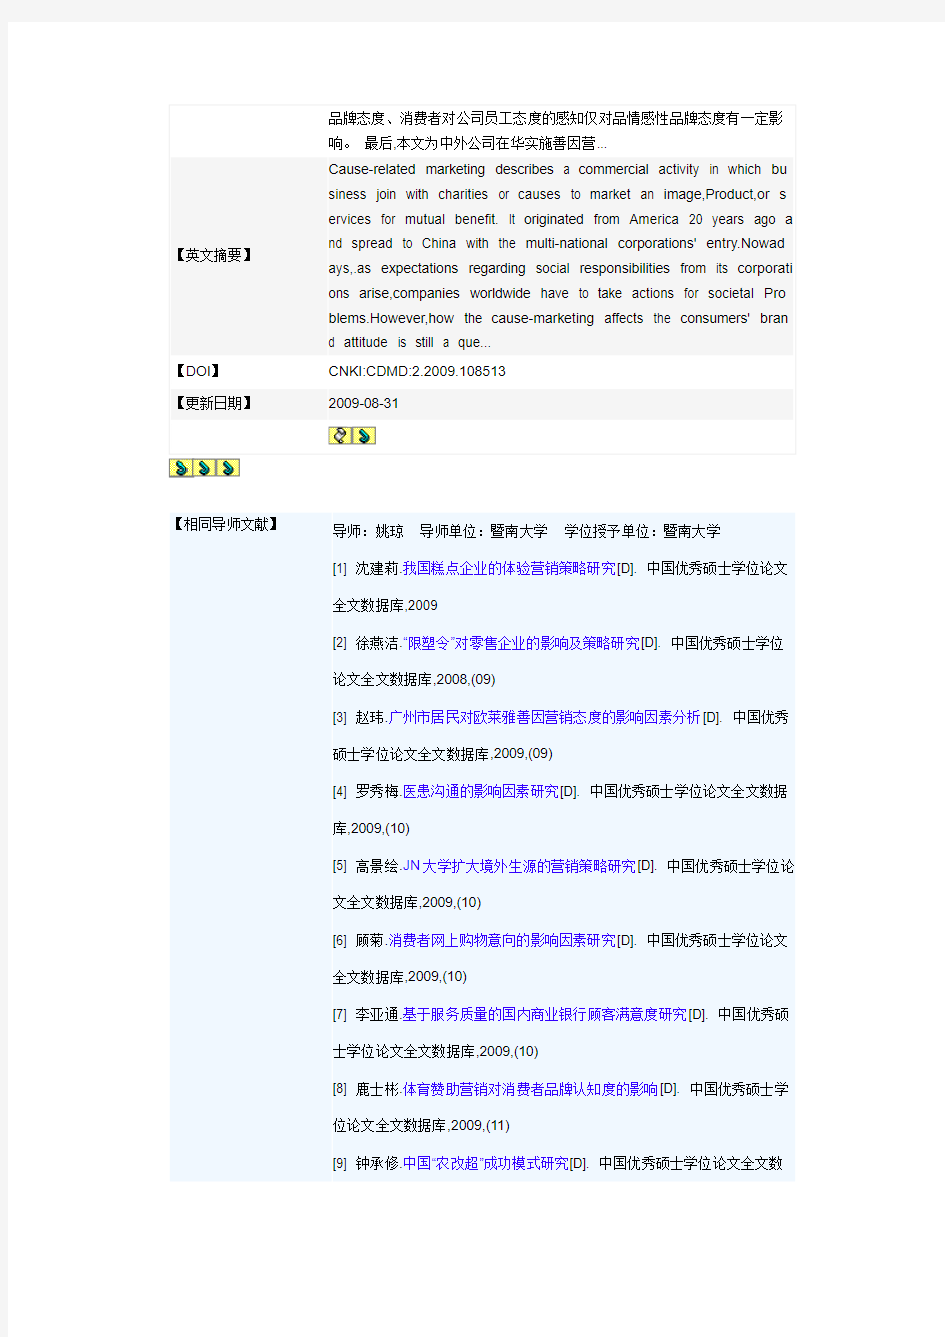 中国优秀硕士学位论文全文数据库